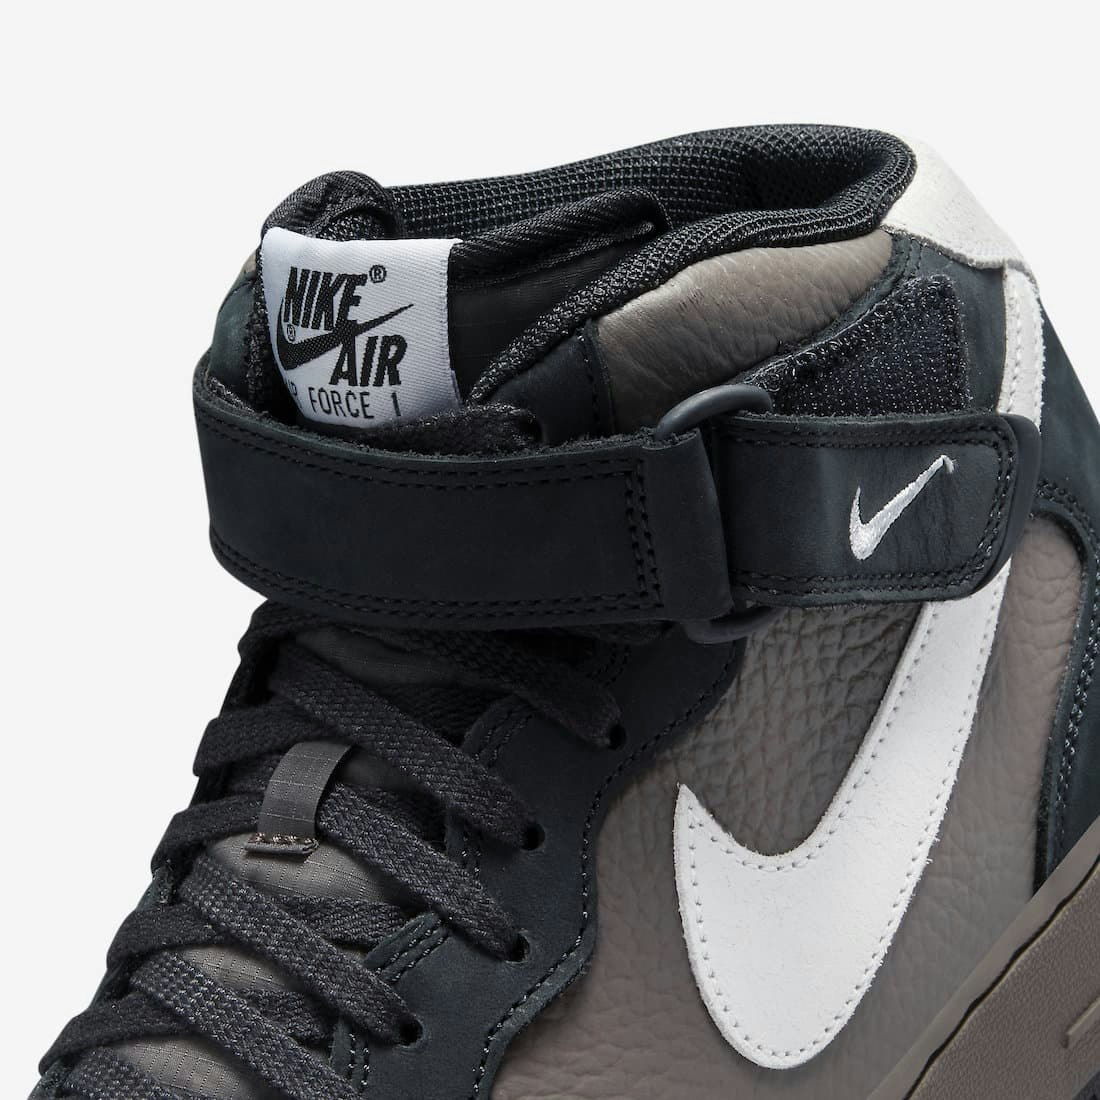 Nike Air Force 1 Mid “Berlin”